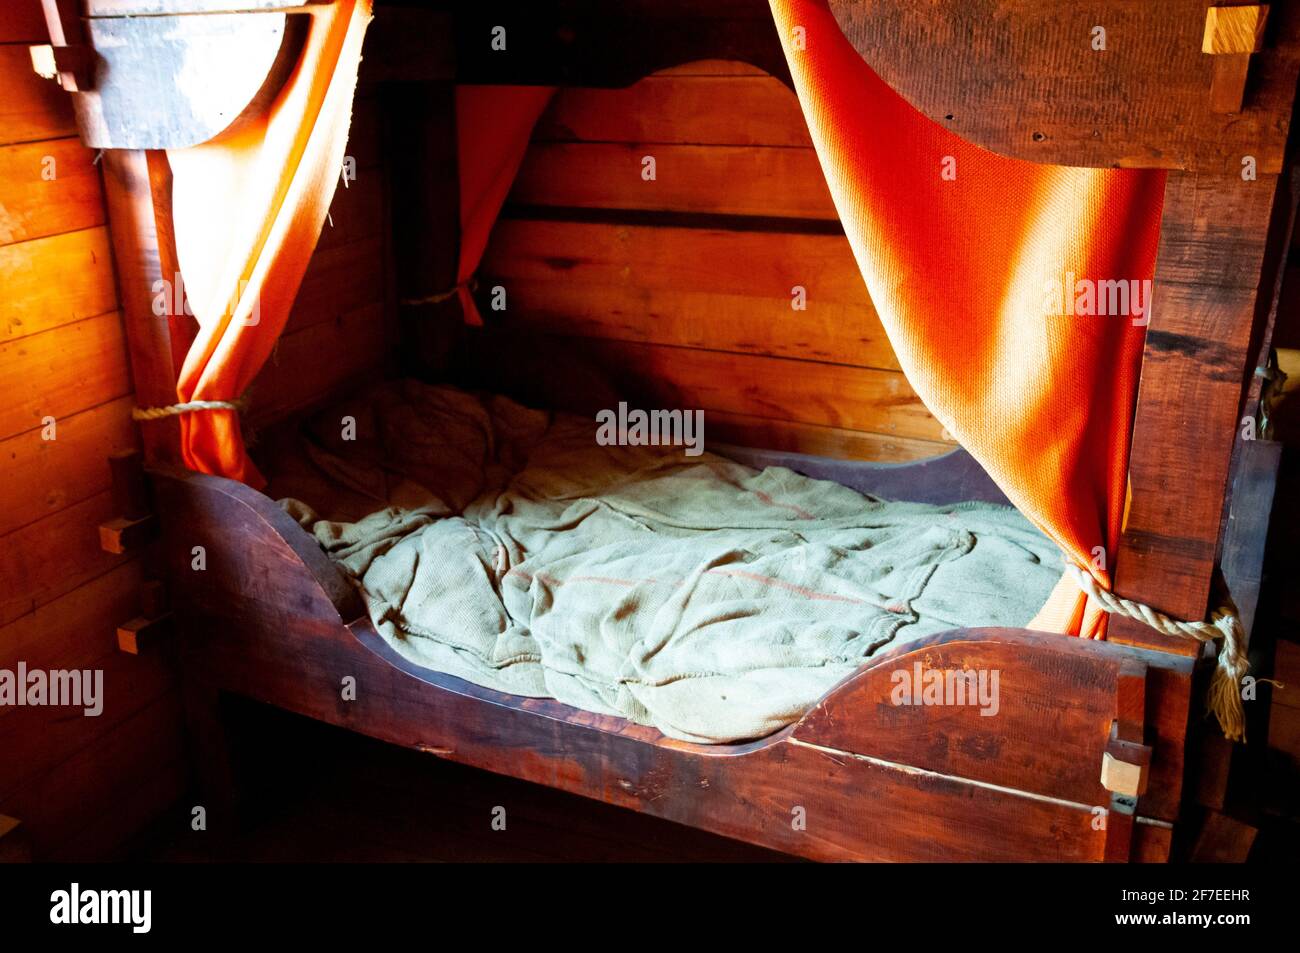 Cabaña en el viejo barco de madera Foto de stock